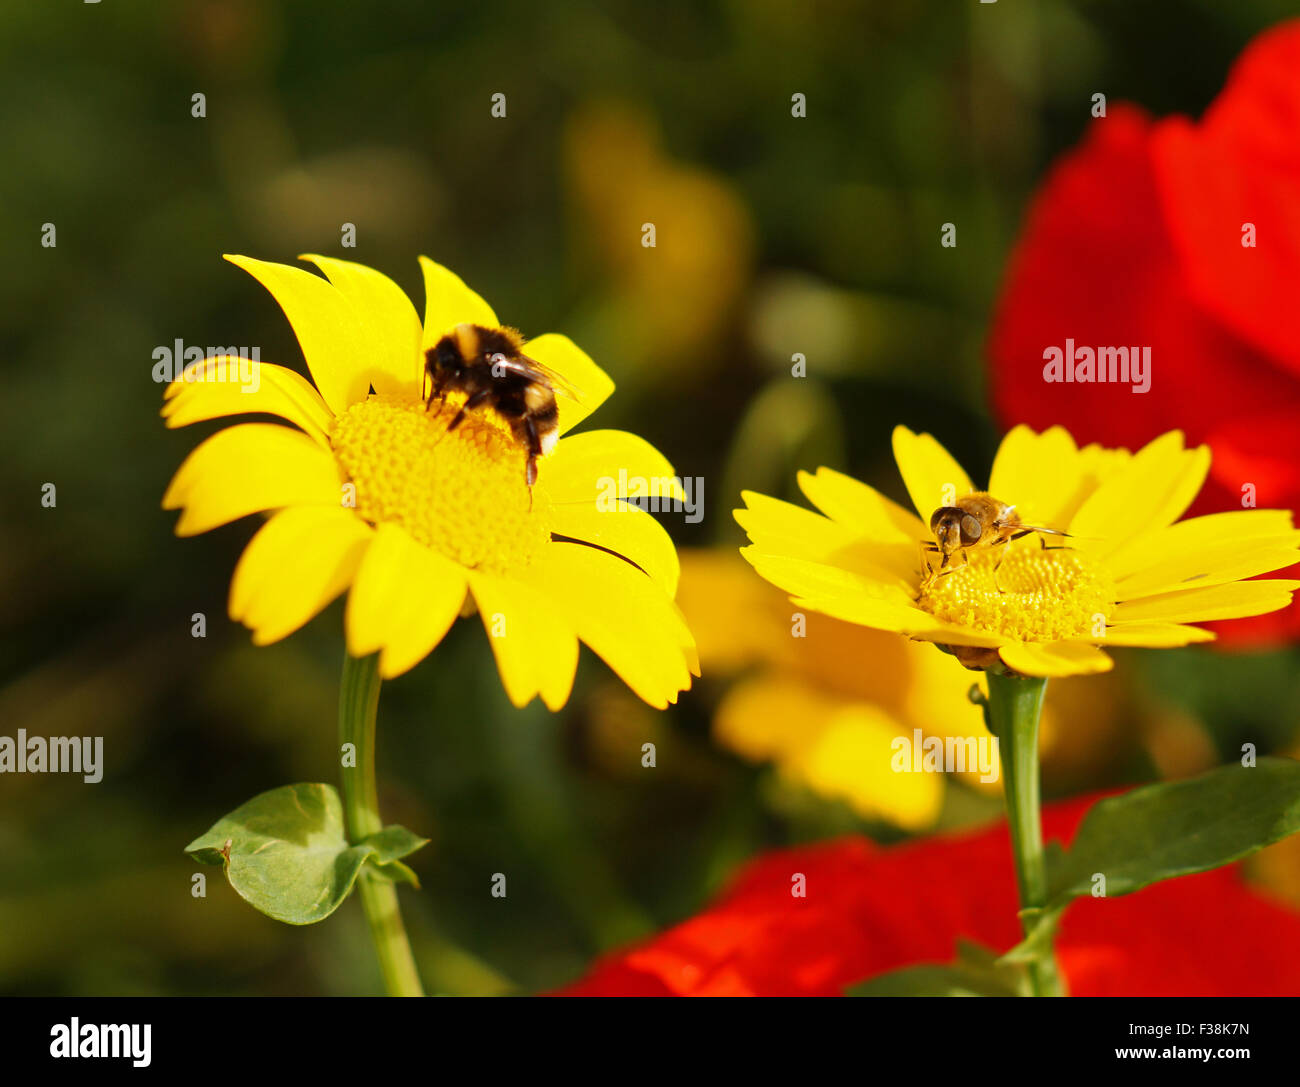 Hummel auf schönen gelben wilde Blume mit roten Blume im Hintergrund, Grün & Flower Background, gelbe Daisy, gelbe Blume, euryops Pectinatus Stockfoto